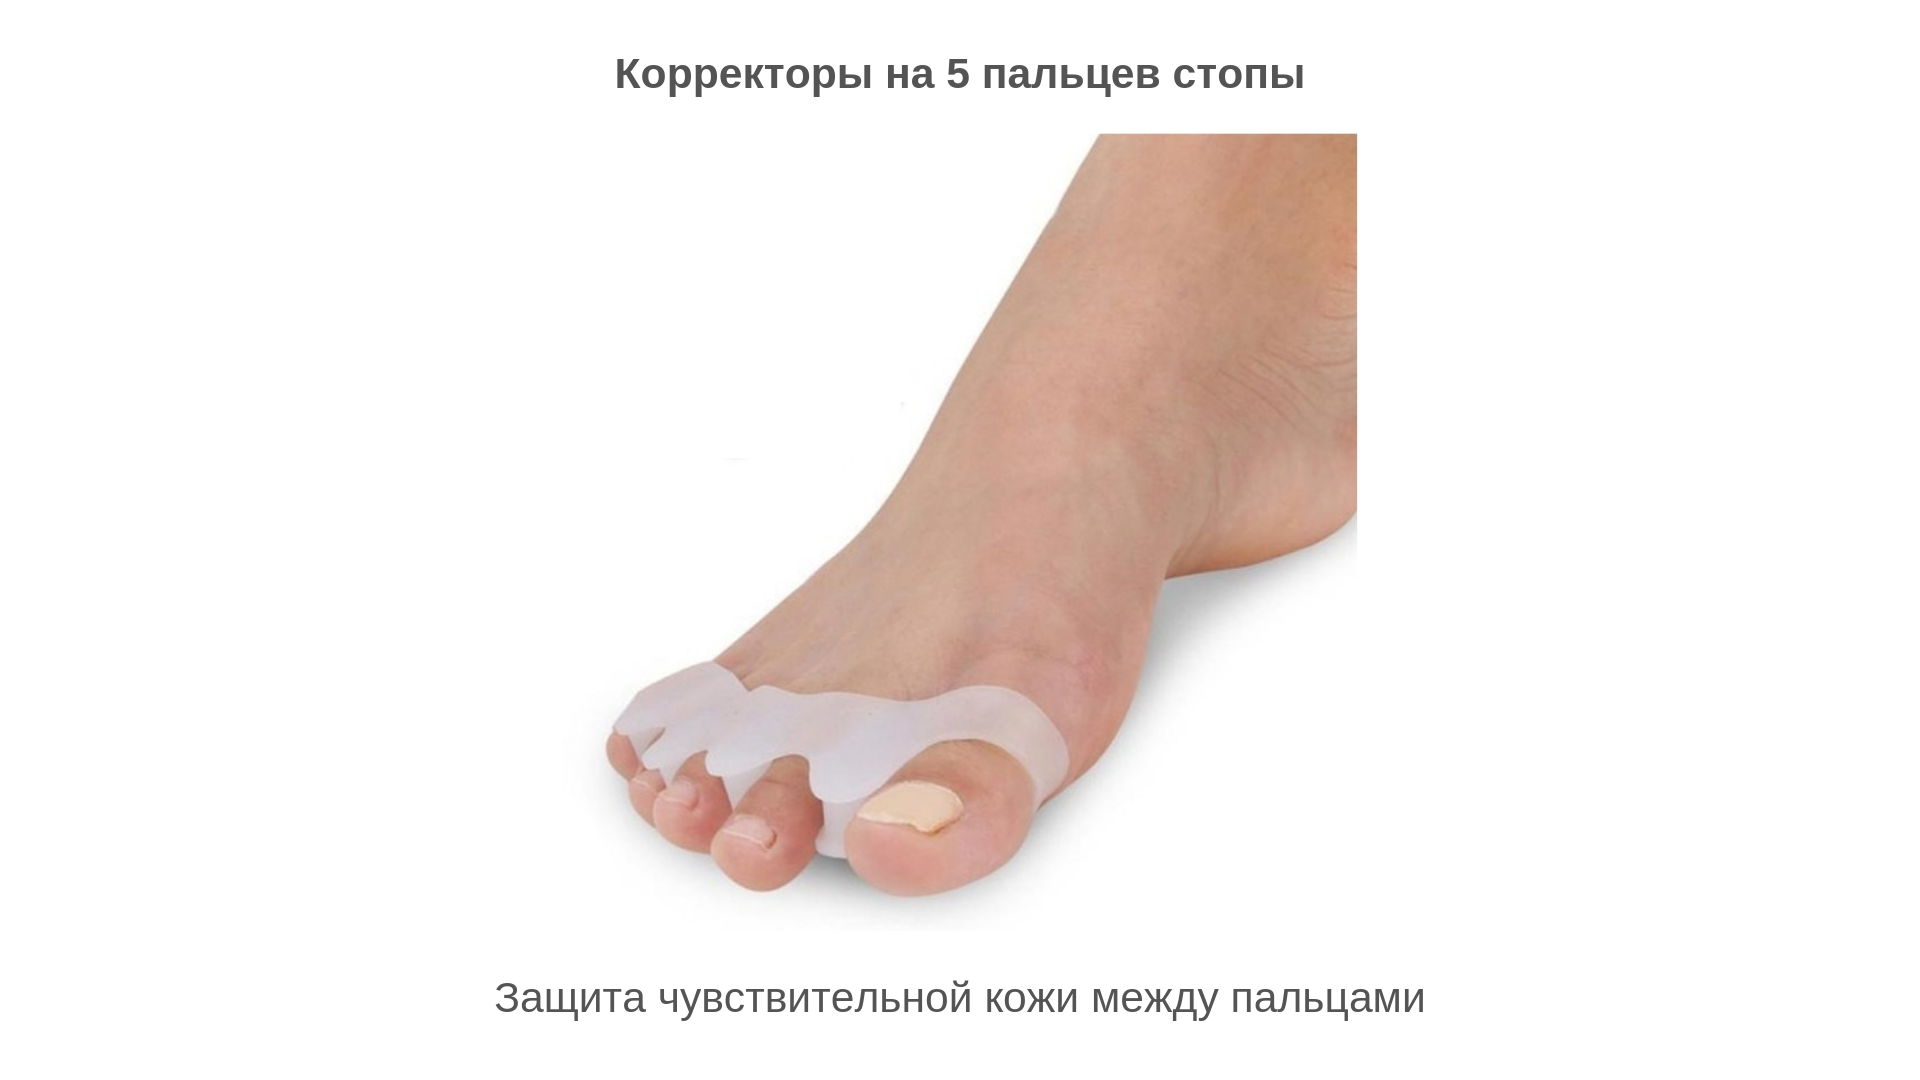 Трескается кожа между пальцами ног